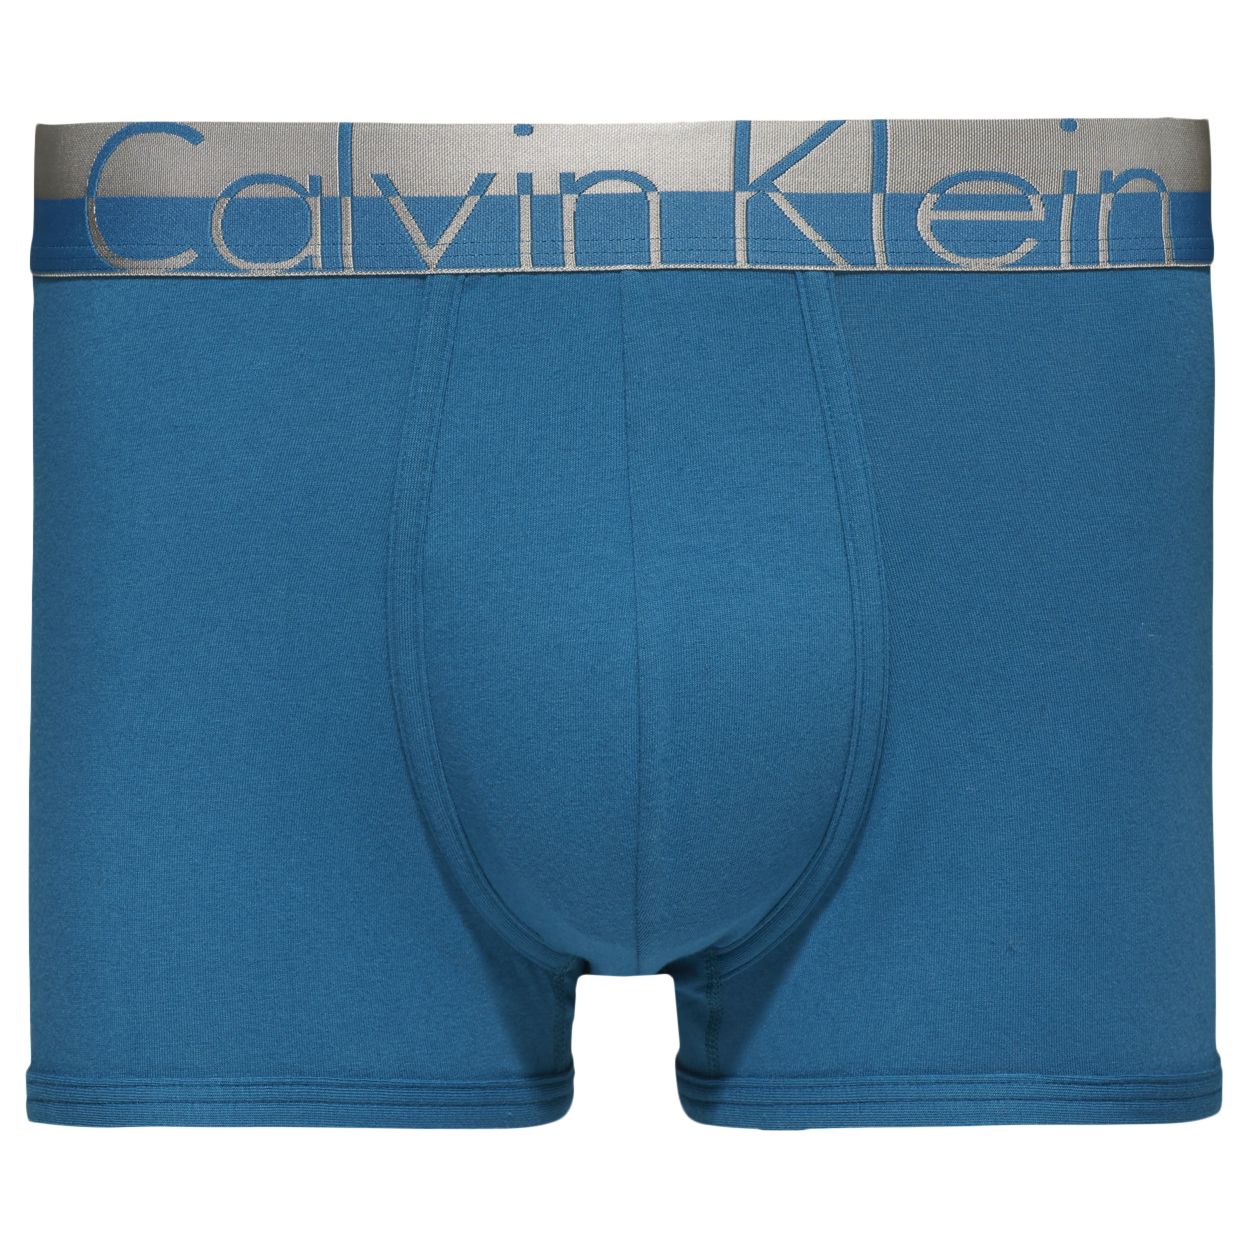 calvin klein magnetic underwear